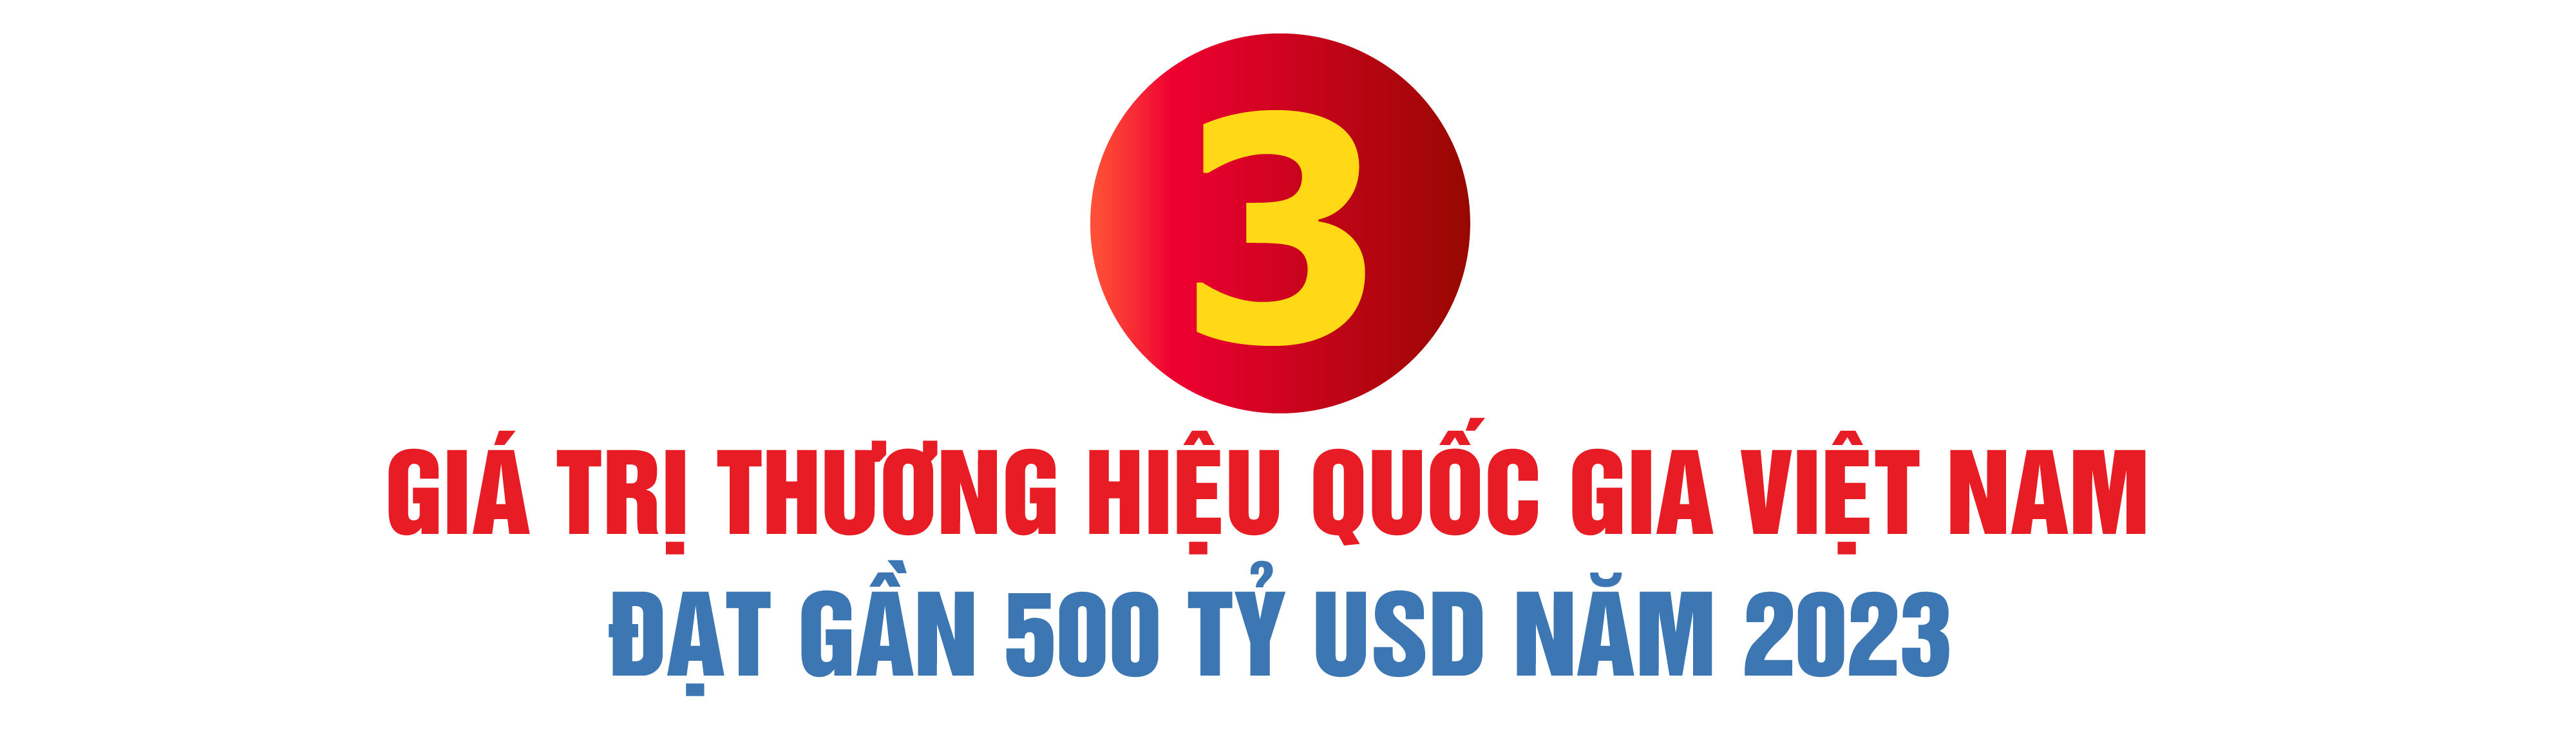 Trở thành Thương hiệu quốc gia Việt Nam là “bệ phóng” vững chắc cho doanh nghiệp vươn tầm thế giới